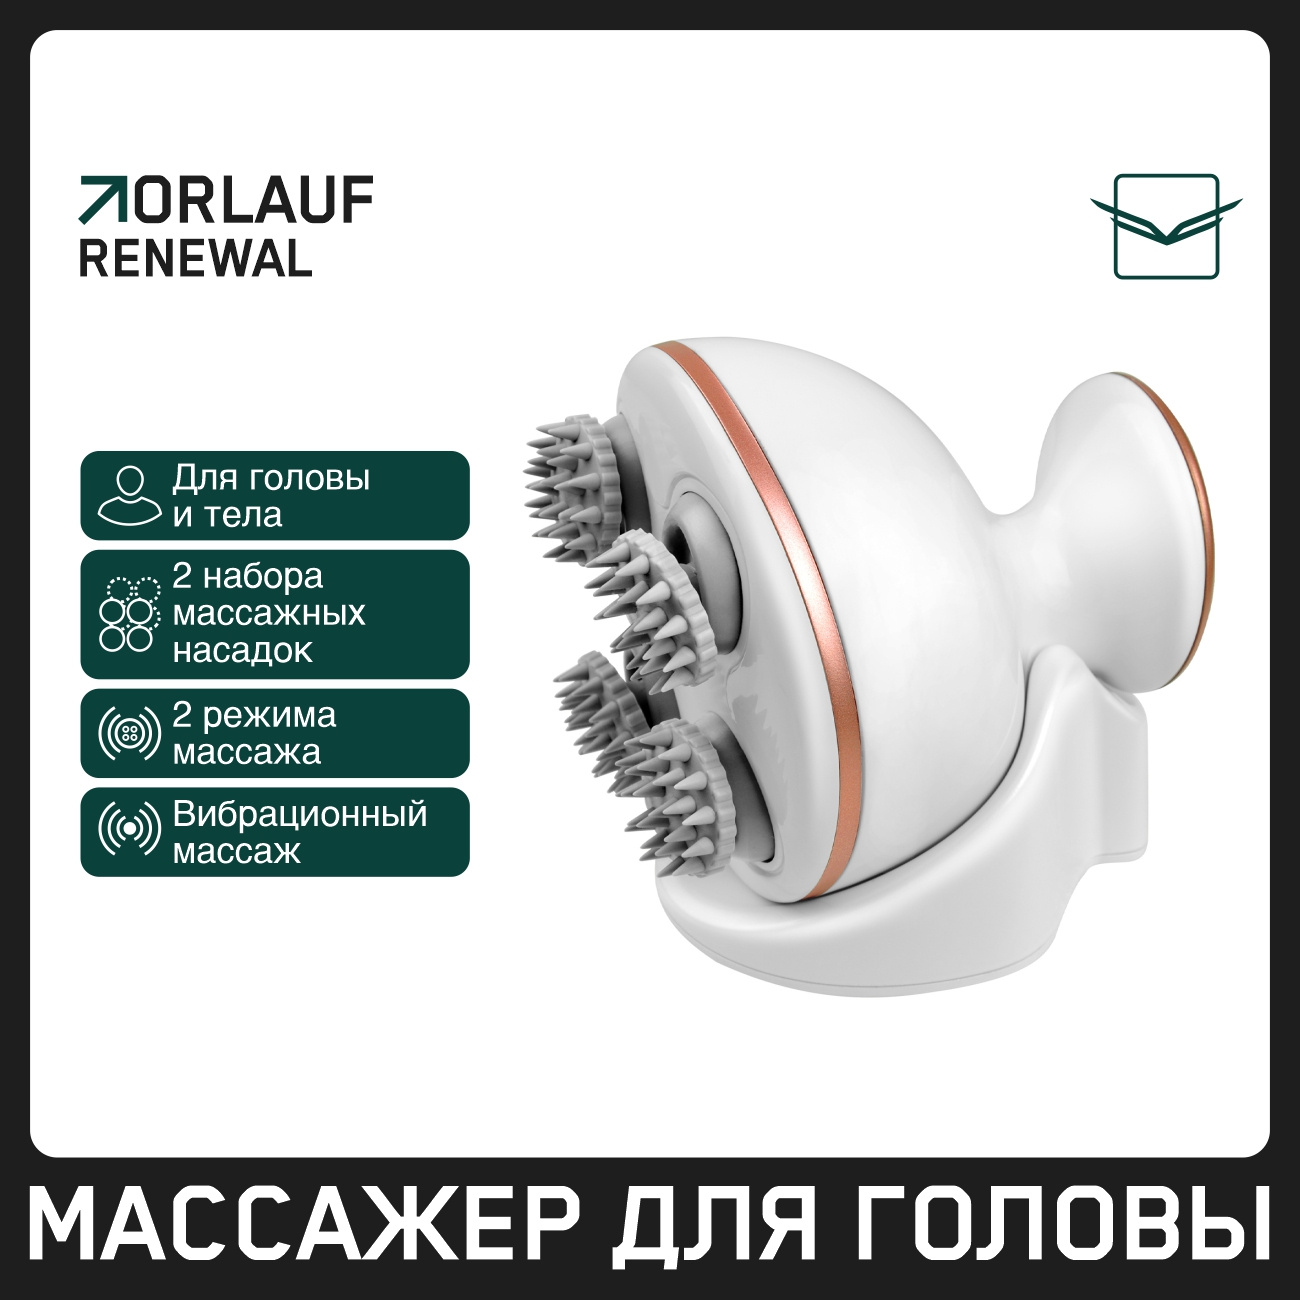 Orlauf Renewal из каталога устройств для массажа в Тольятти по цене 5900 ₽